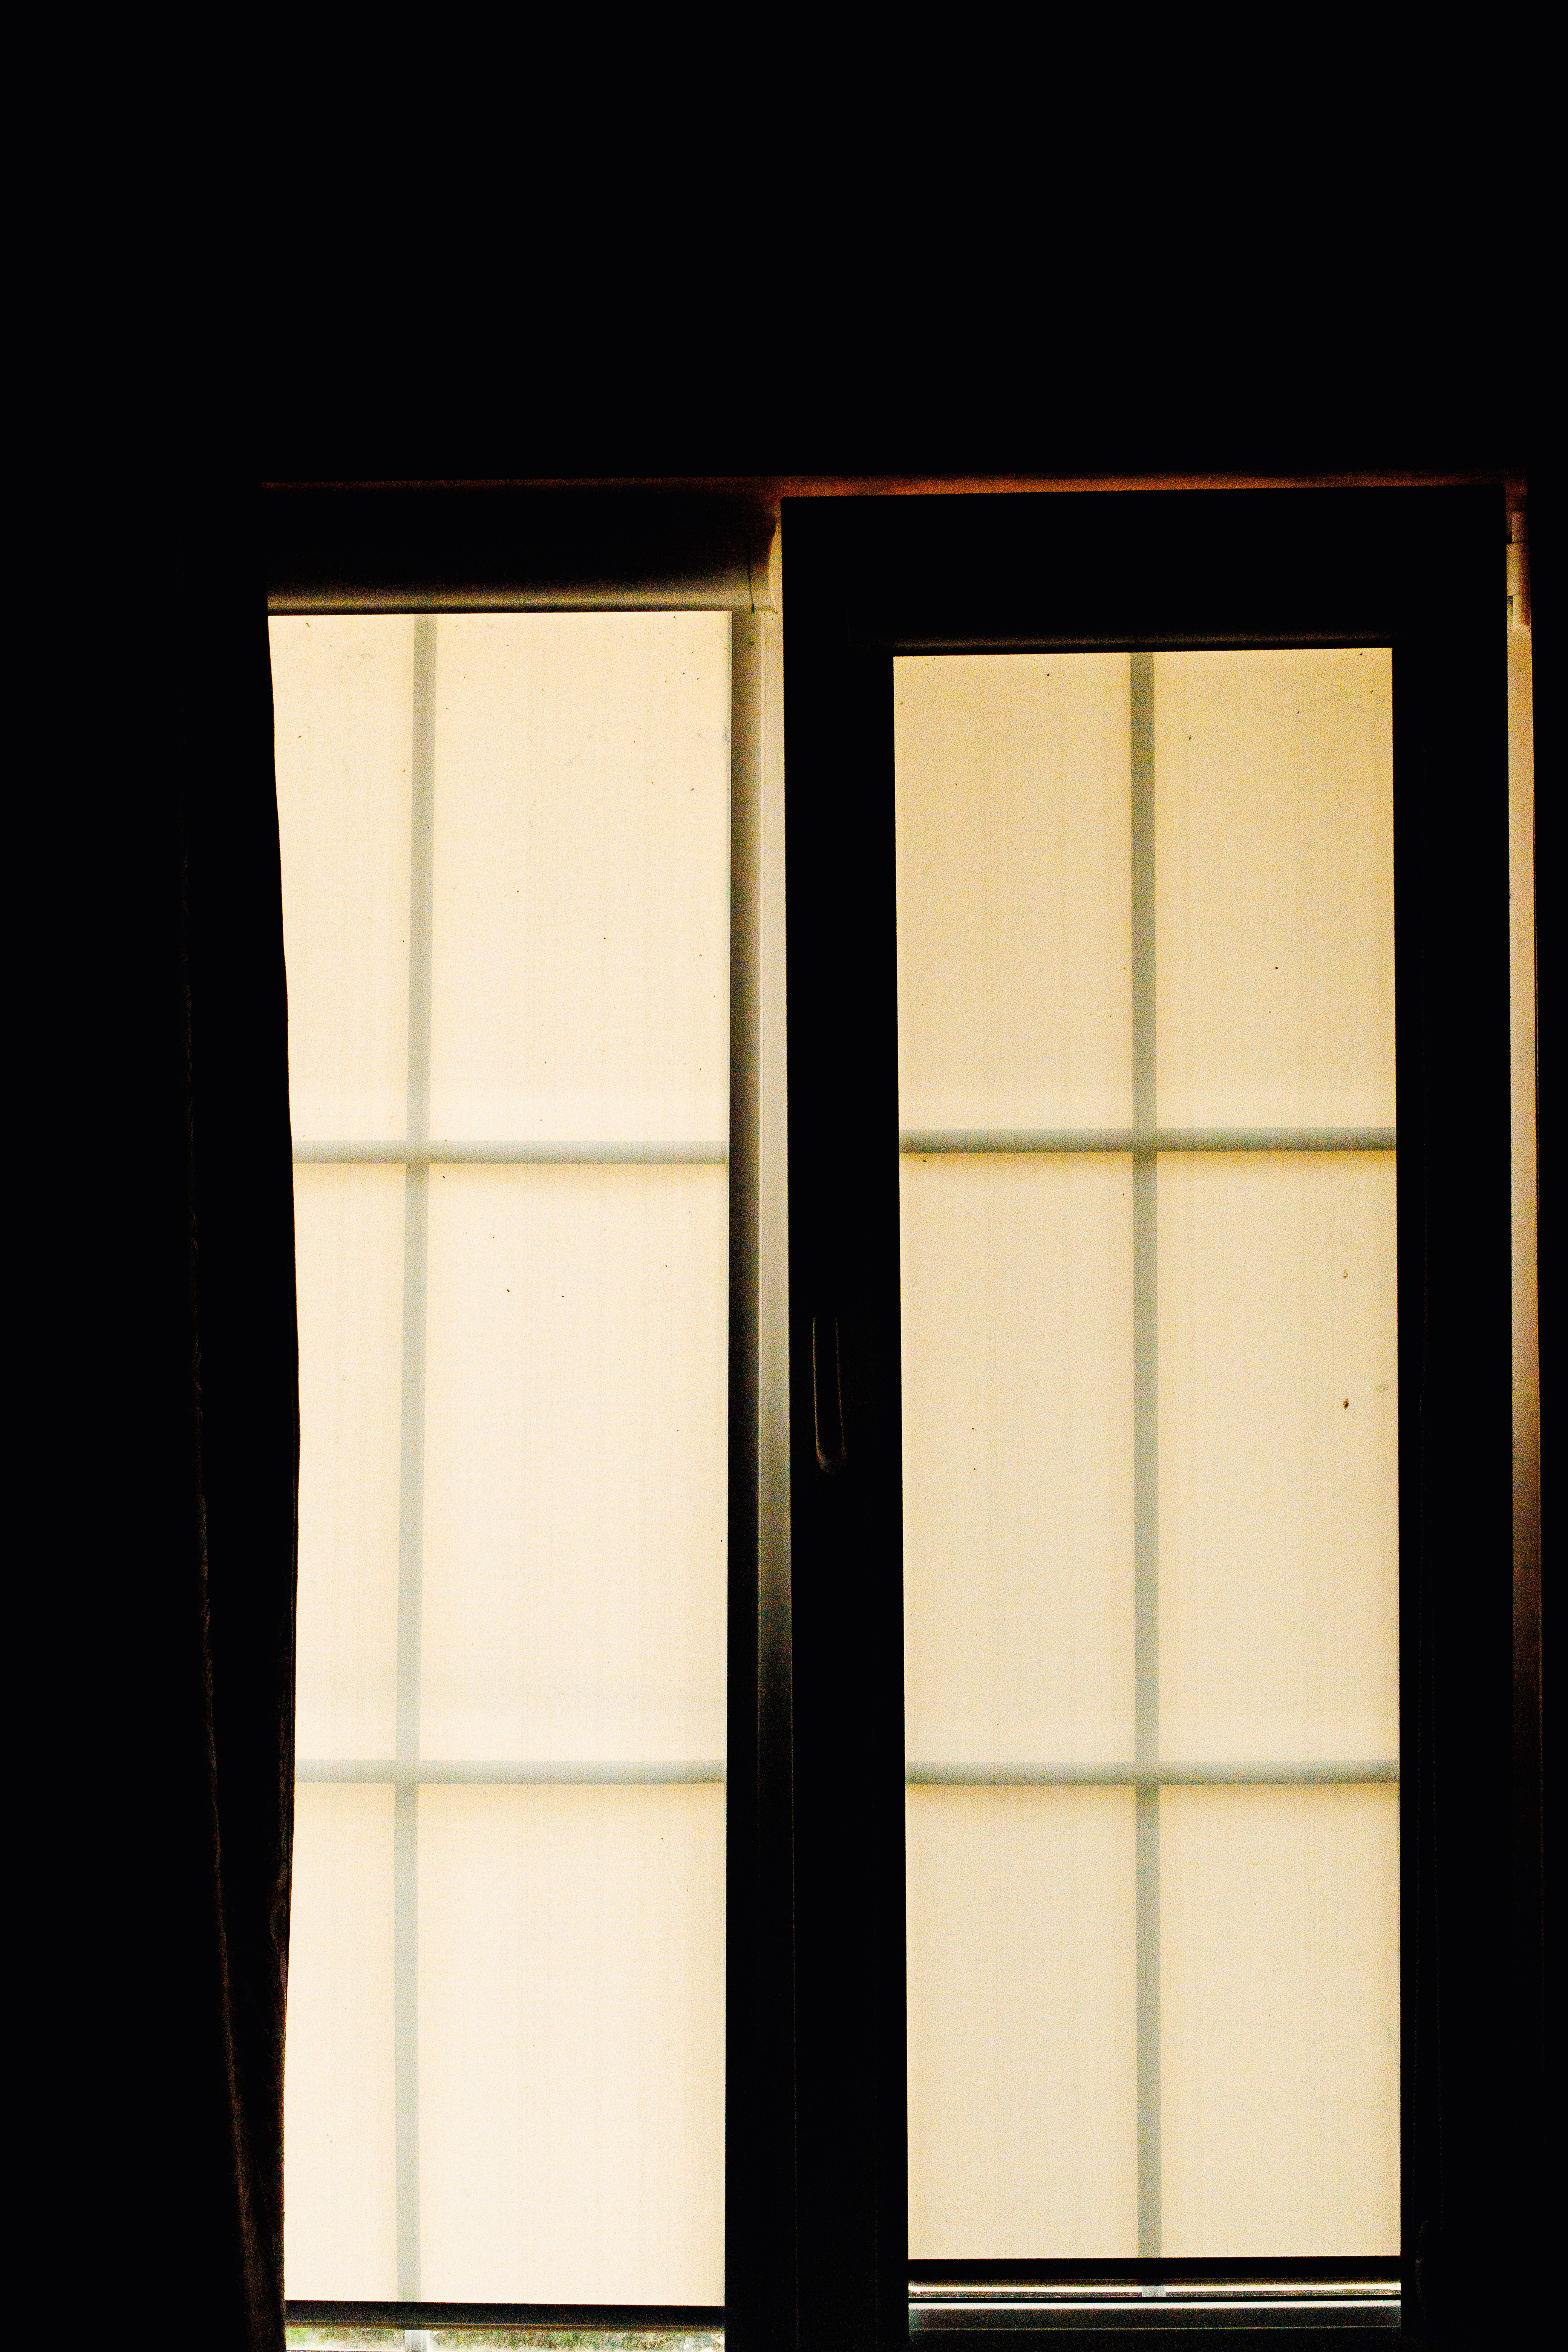 Une pièce sombre avec une fenêtre ouverte | Source : Getty Images